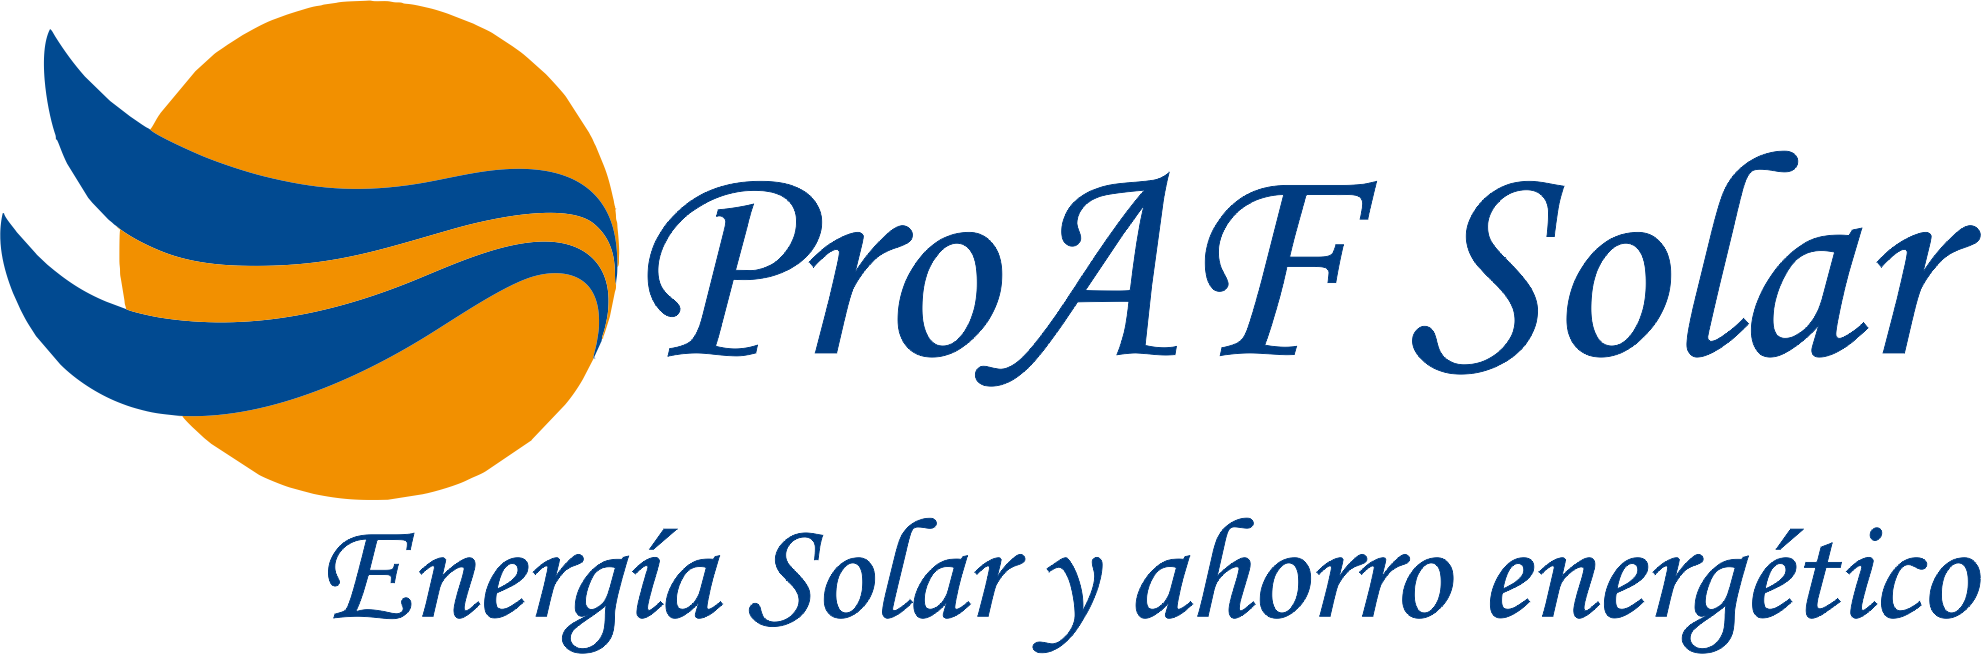 proaf-solar